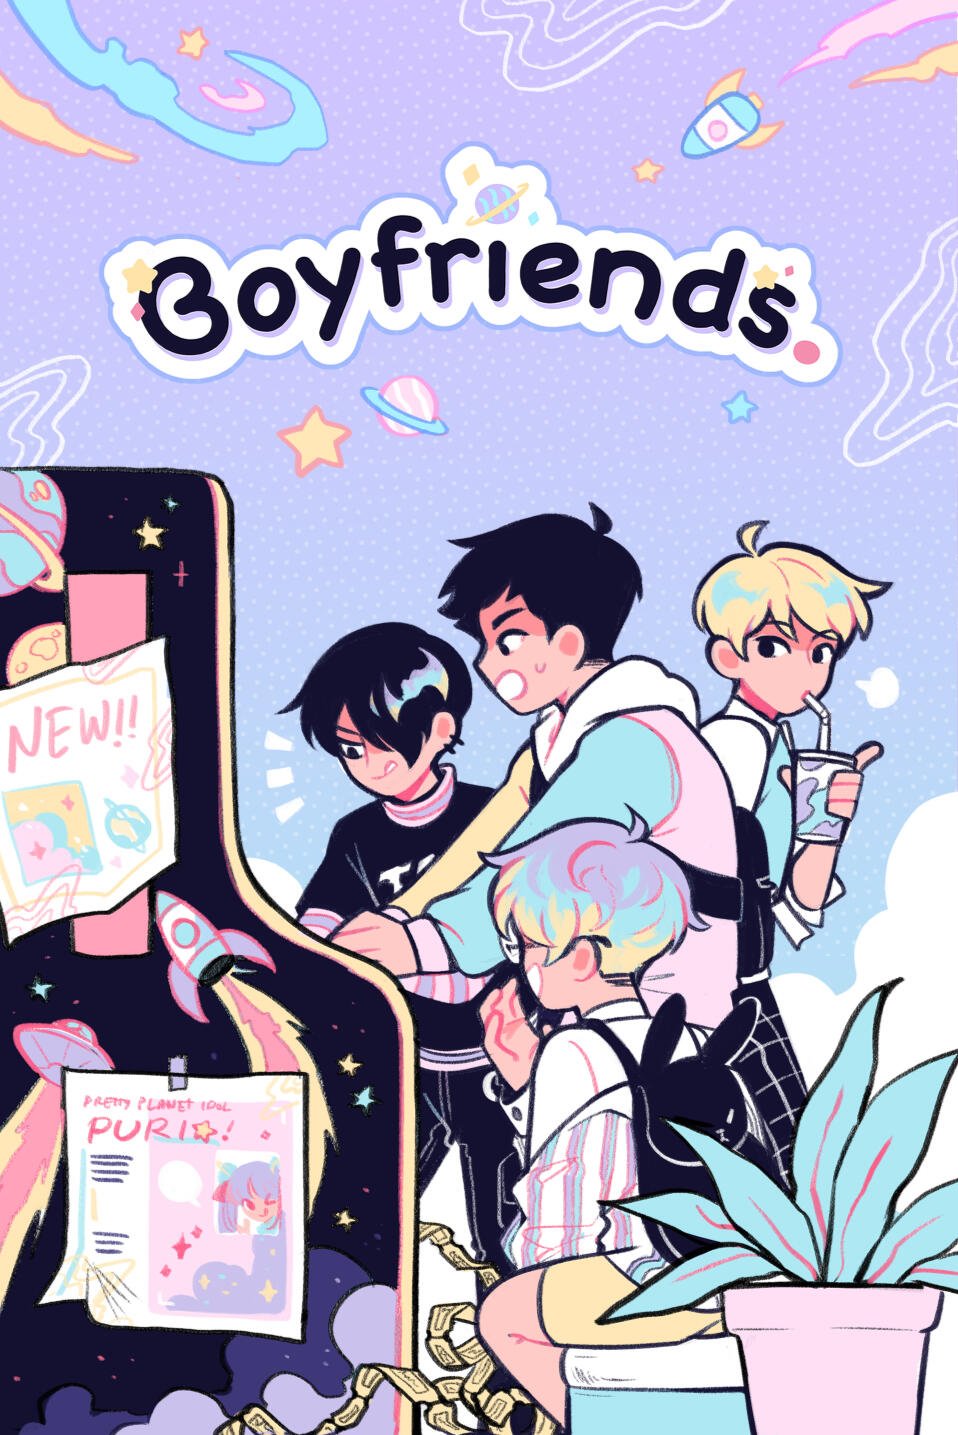 Boyfriends, by refrainbow